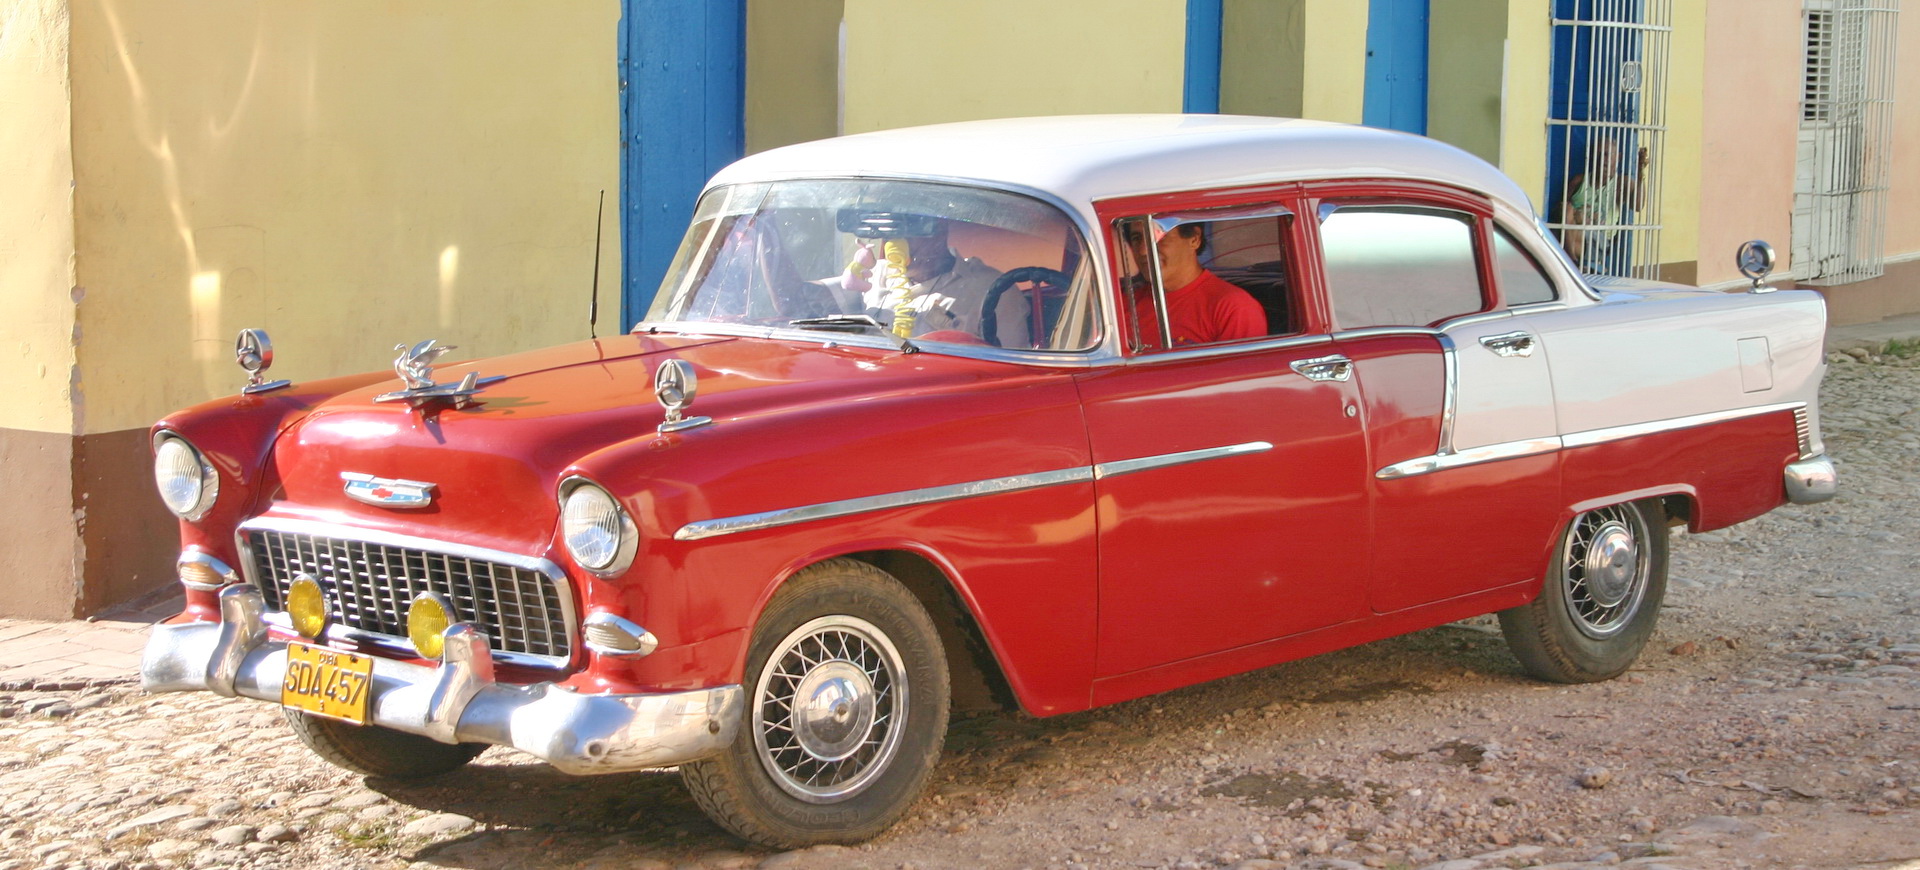 Formalités pour un voyage de tourisme à Cuba